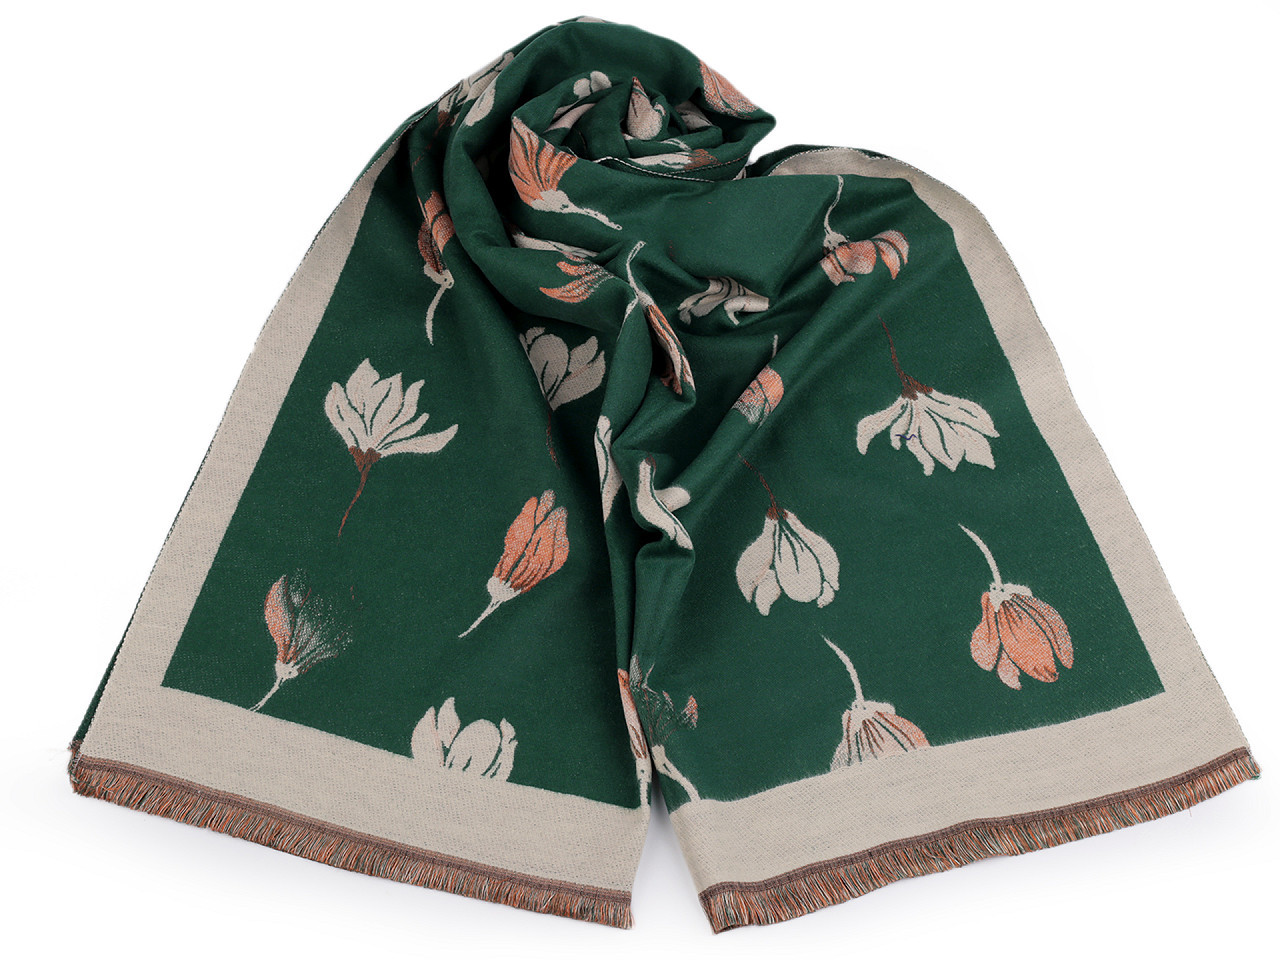 Šátek / šála typu kašmír s třásněmi, květy 65x190 cm, barva 13 zelená tmavá béžová světlá